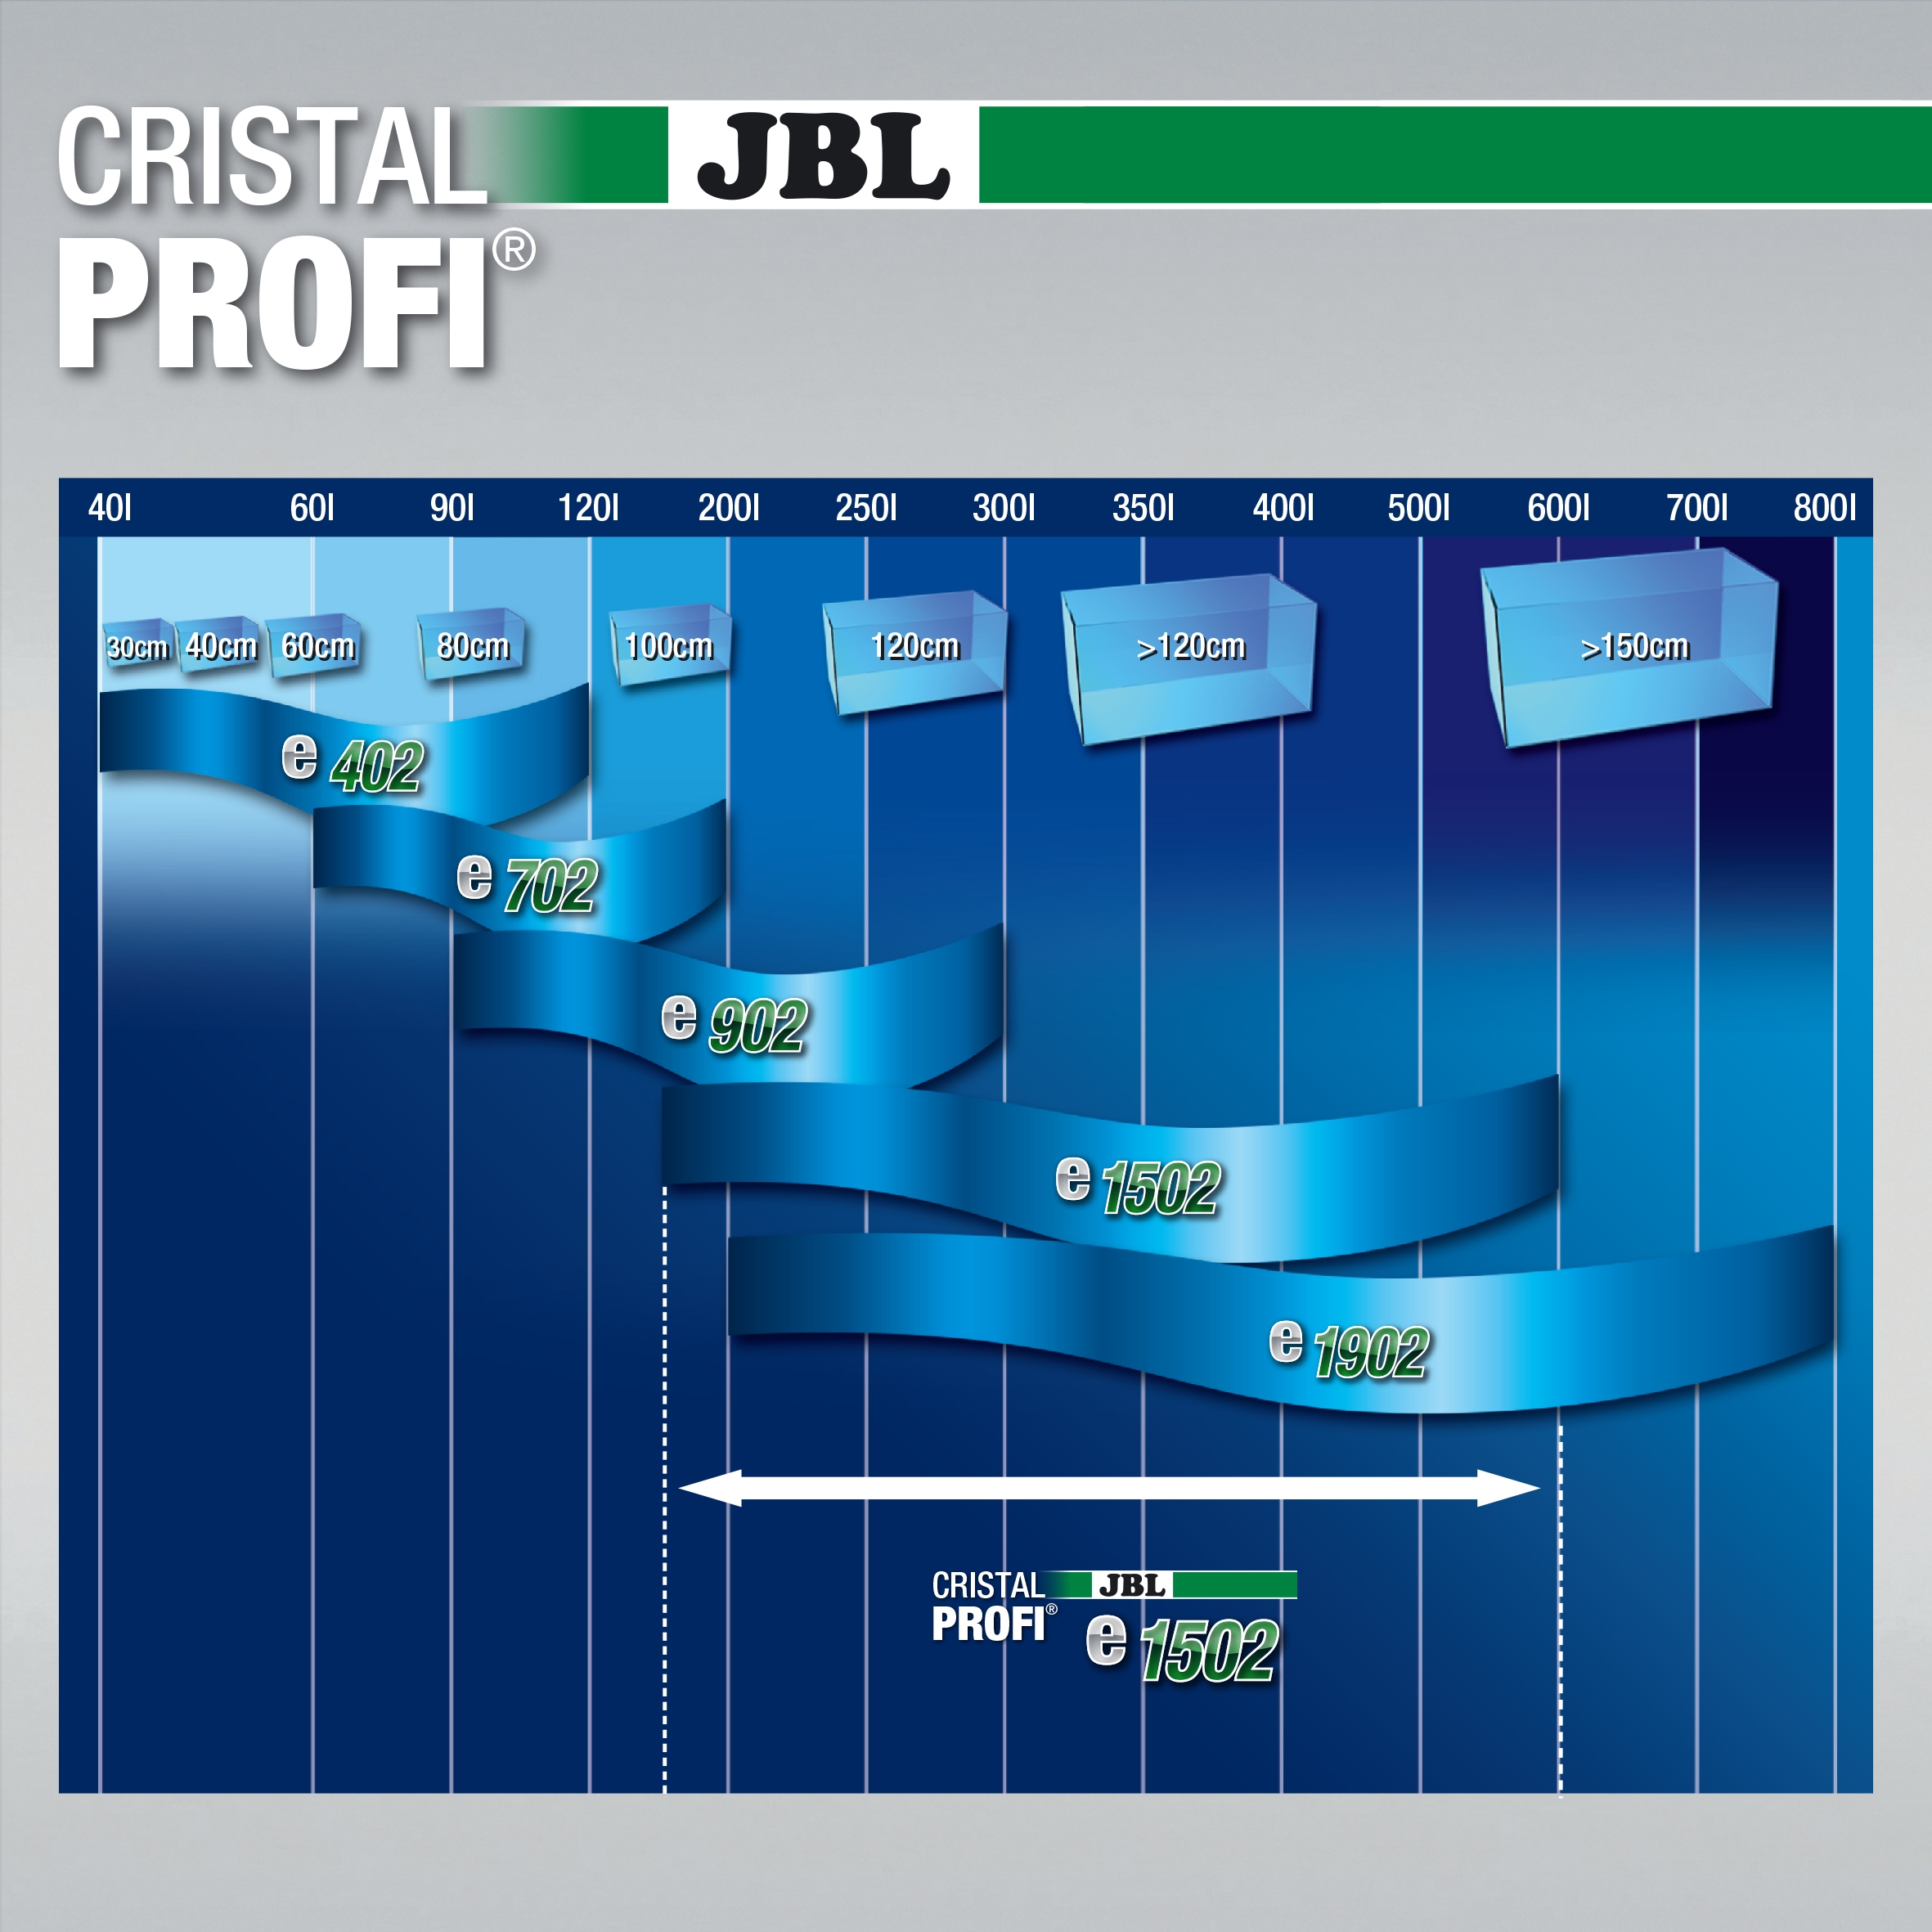 JBL Cristal Profi e 1502 Greenline